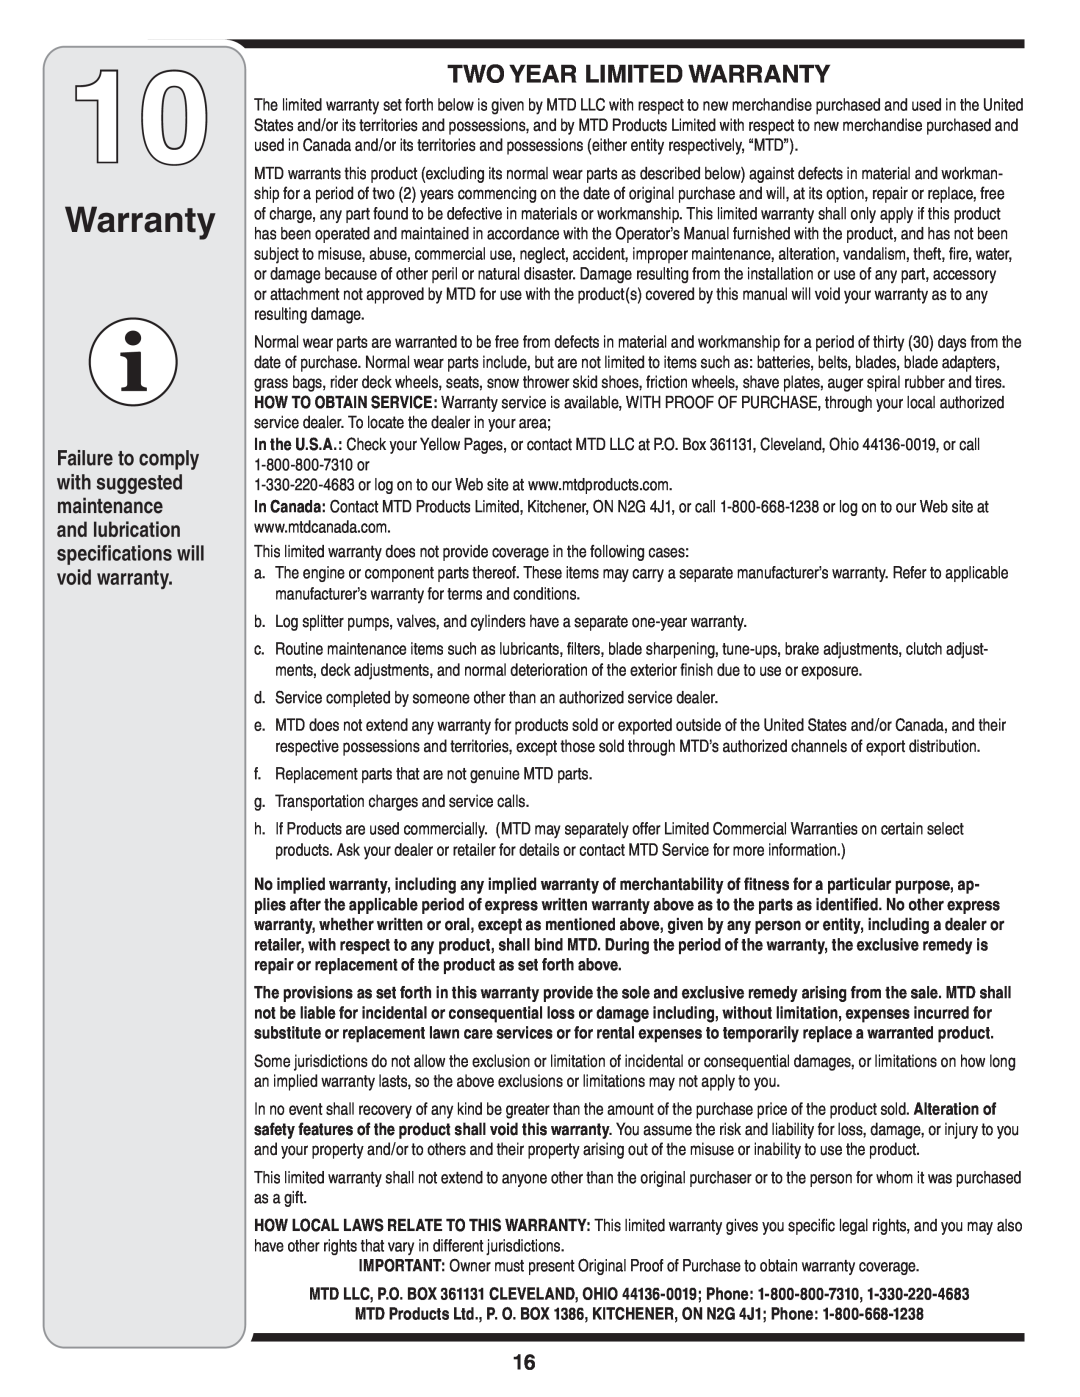 Bolens 241 warranty Two Year Limited Warranty 